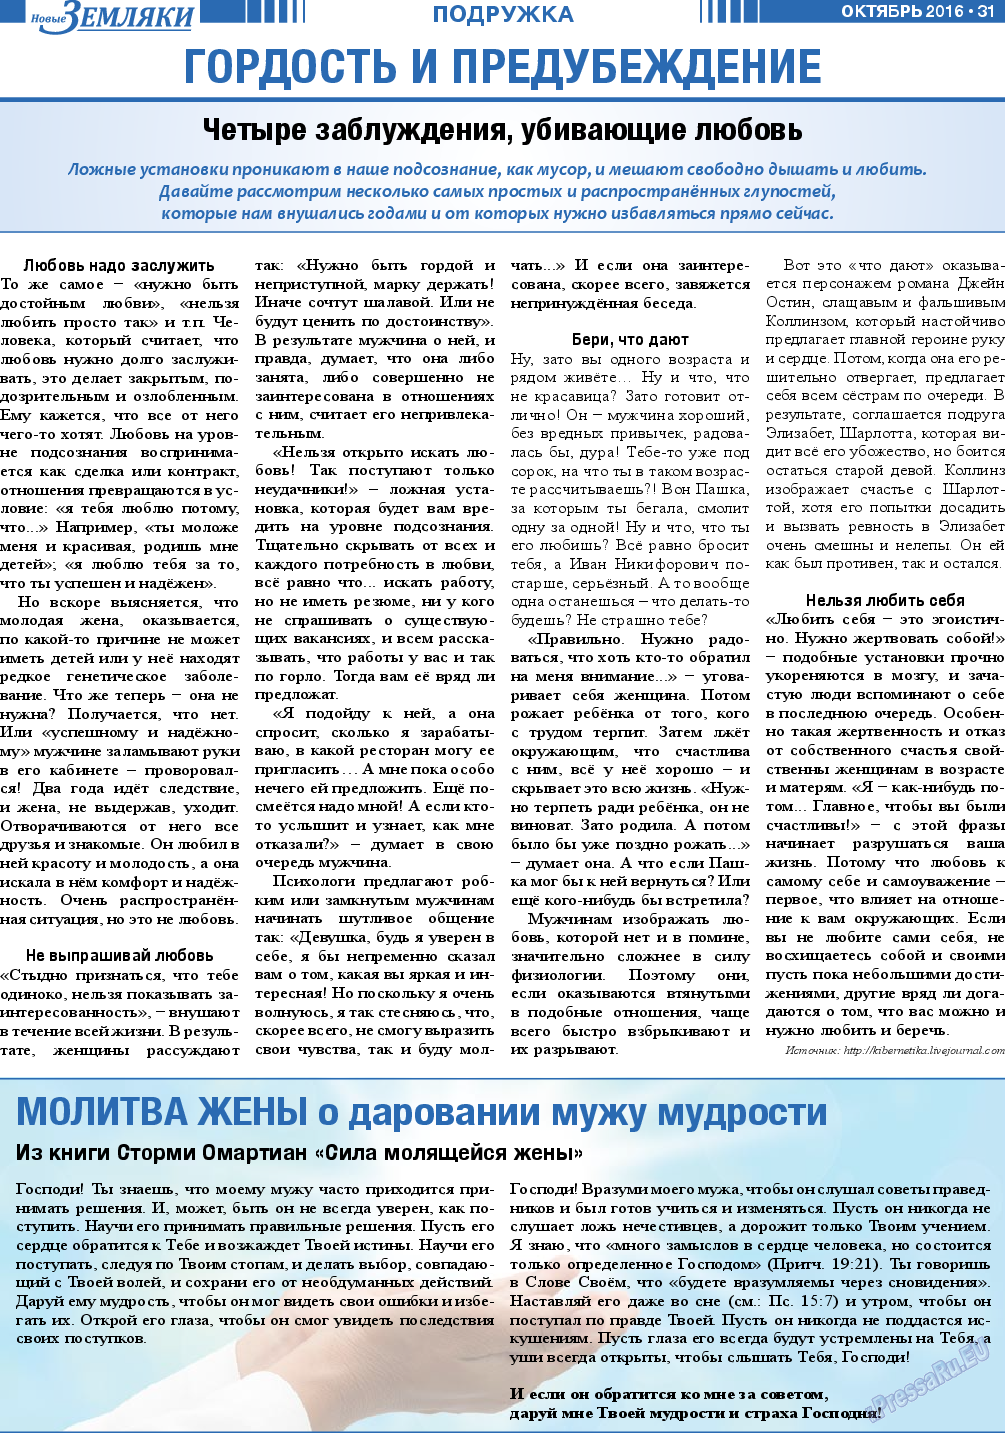 Новые Земляки, газета. 2016 №10 стр.31